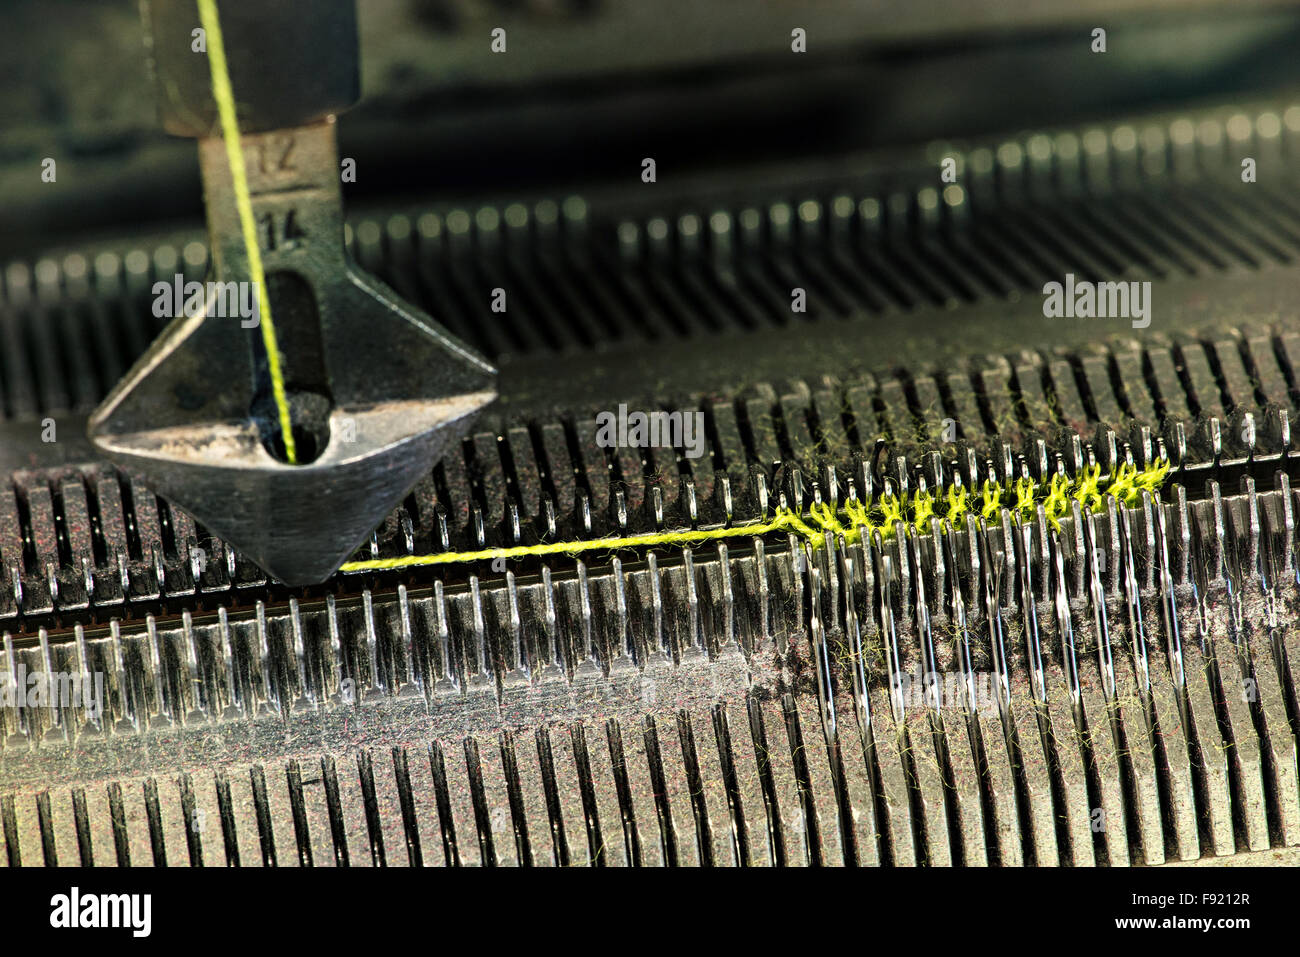 Detalle de máquina de tejer trabaja en un concepto textil Foto de stock